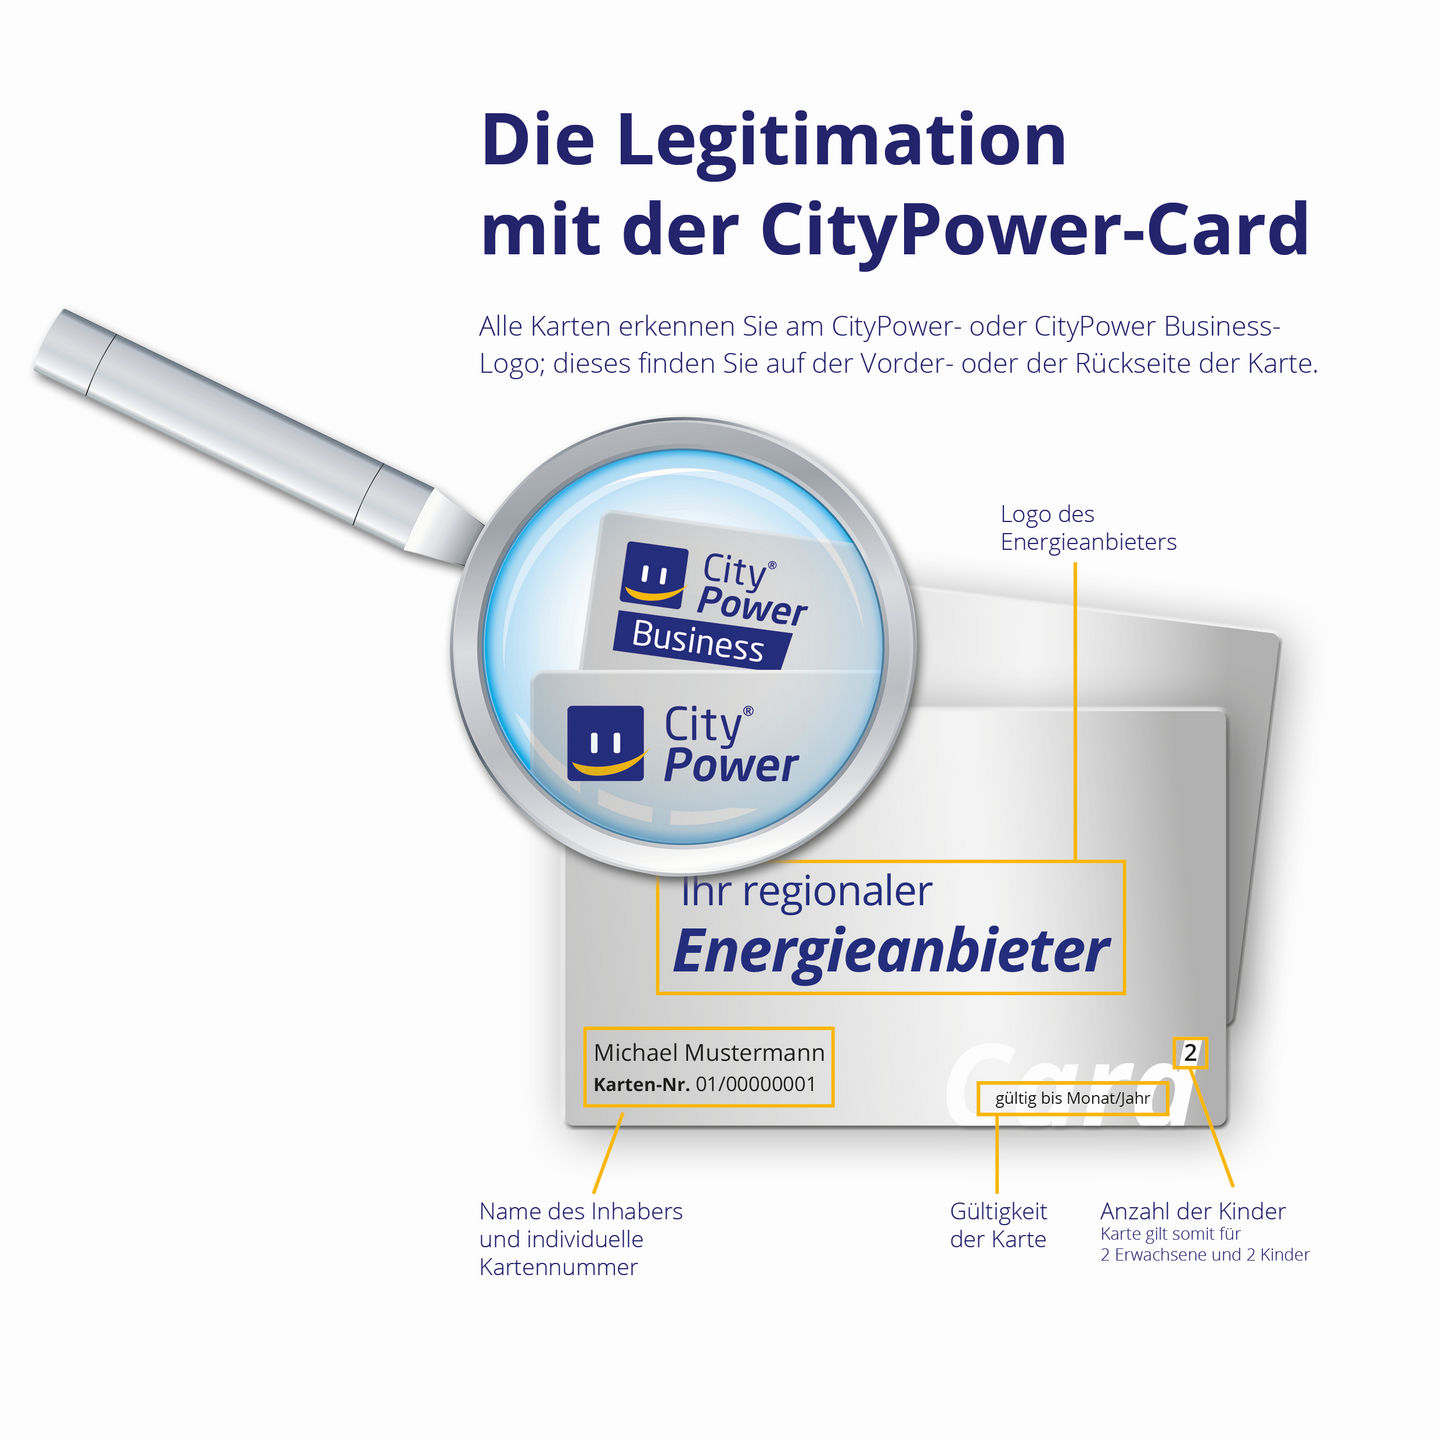 Erklärungen zur Legitimierung mit der CityPower-Card